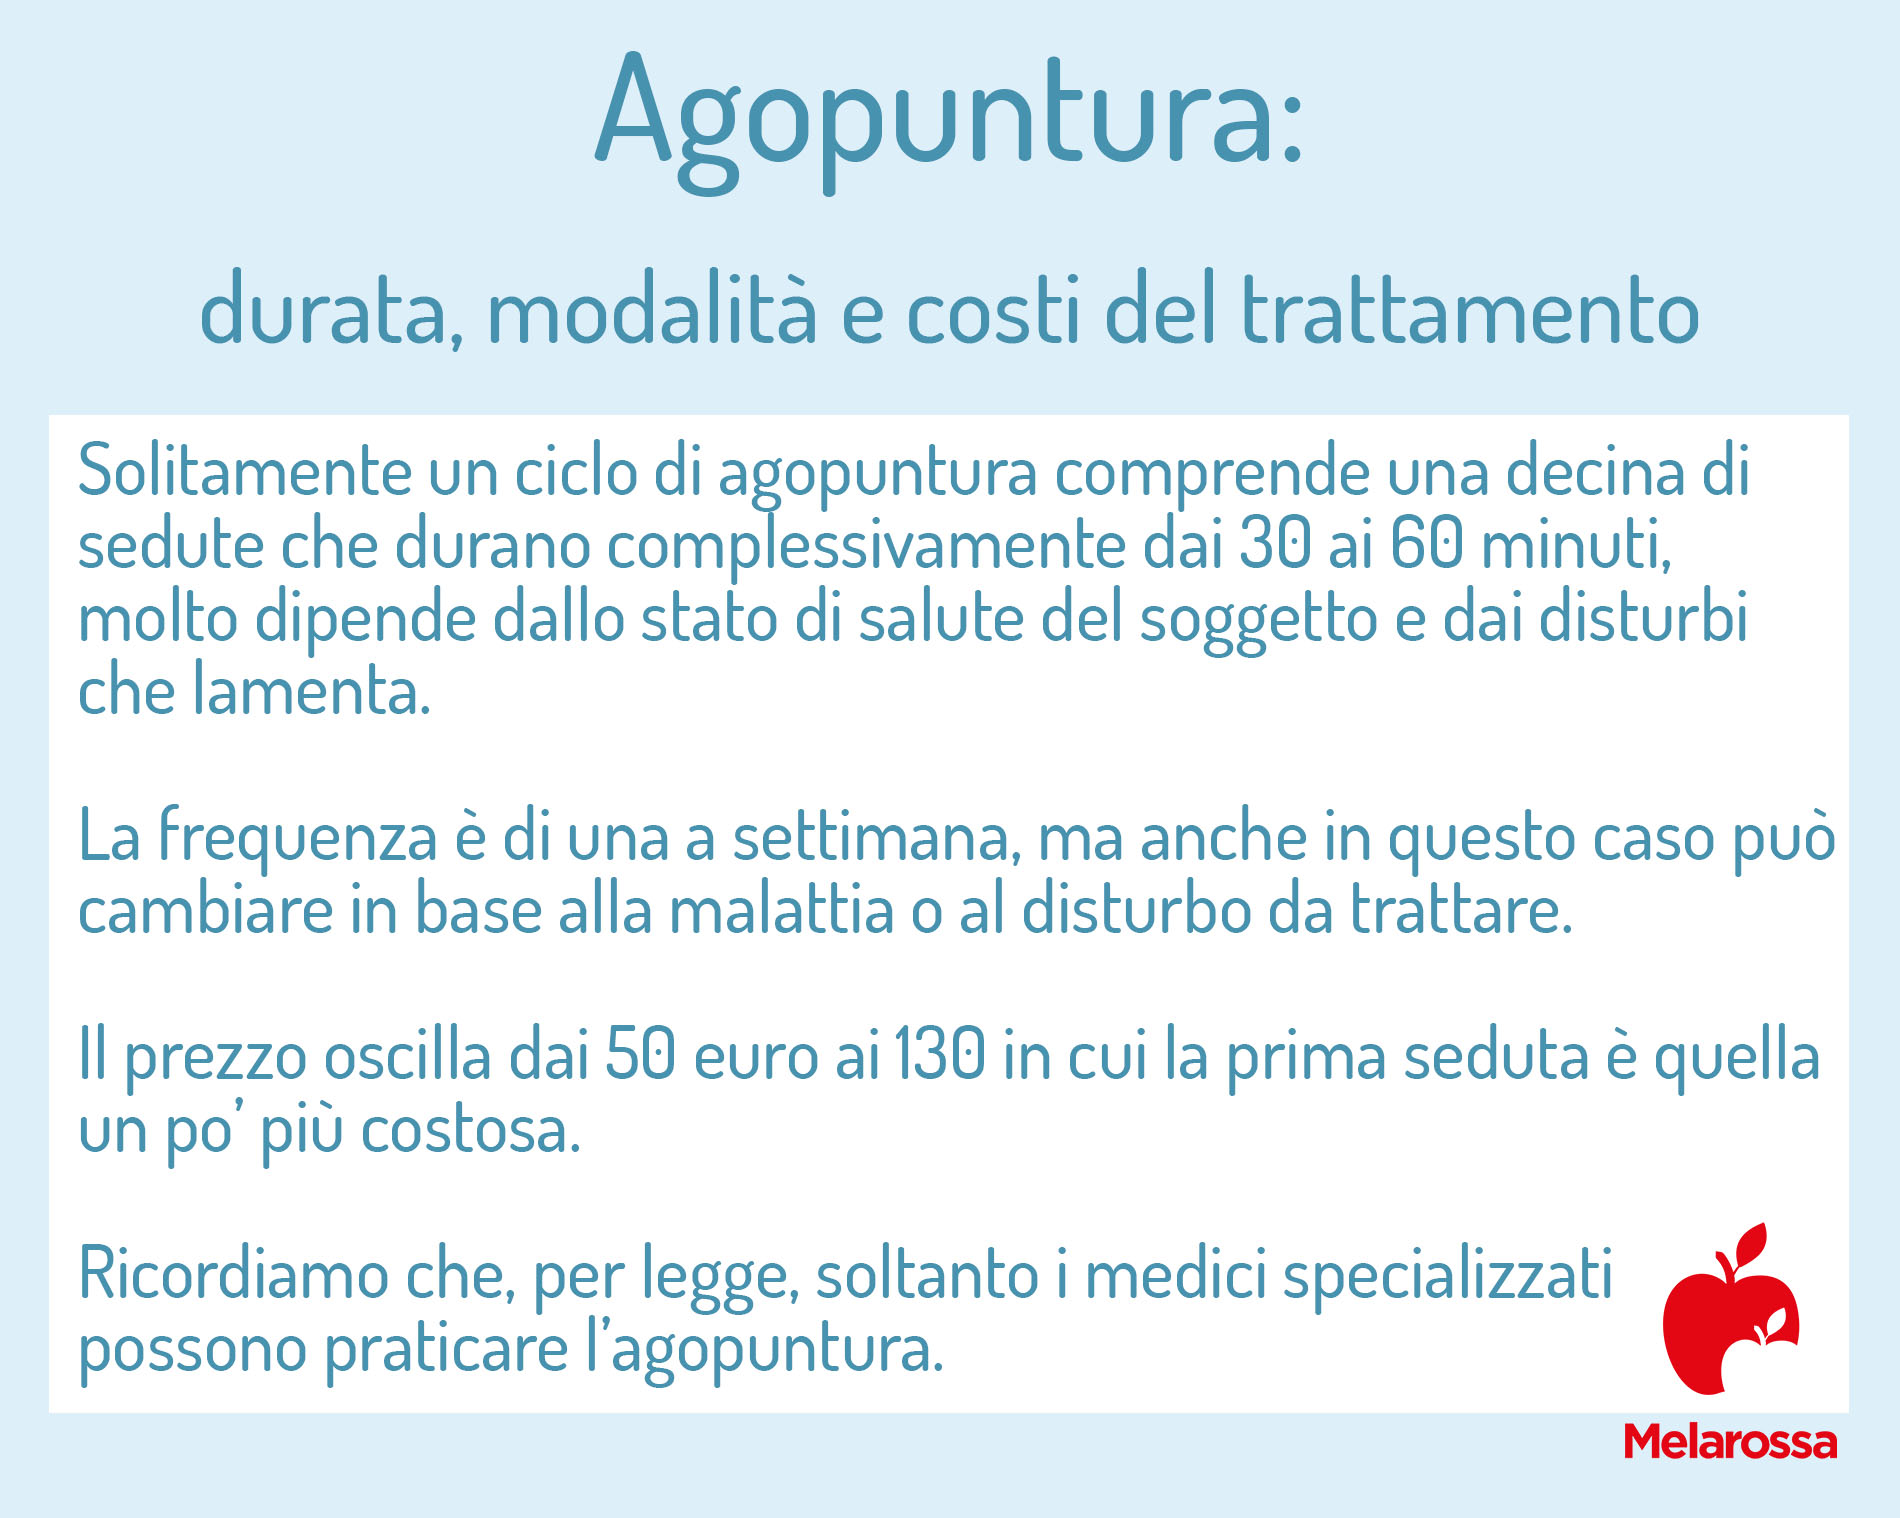 agopuntura: durata e costi del trattamento 